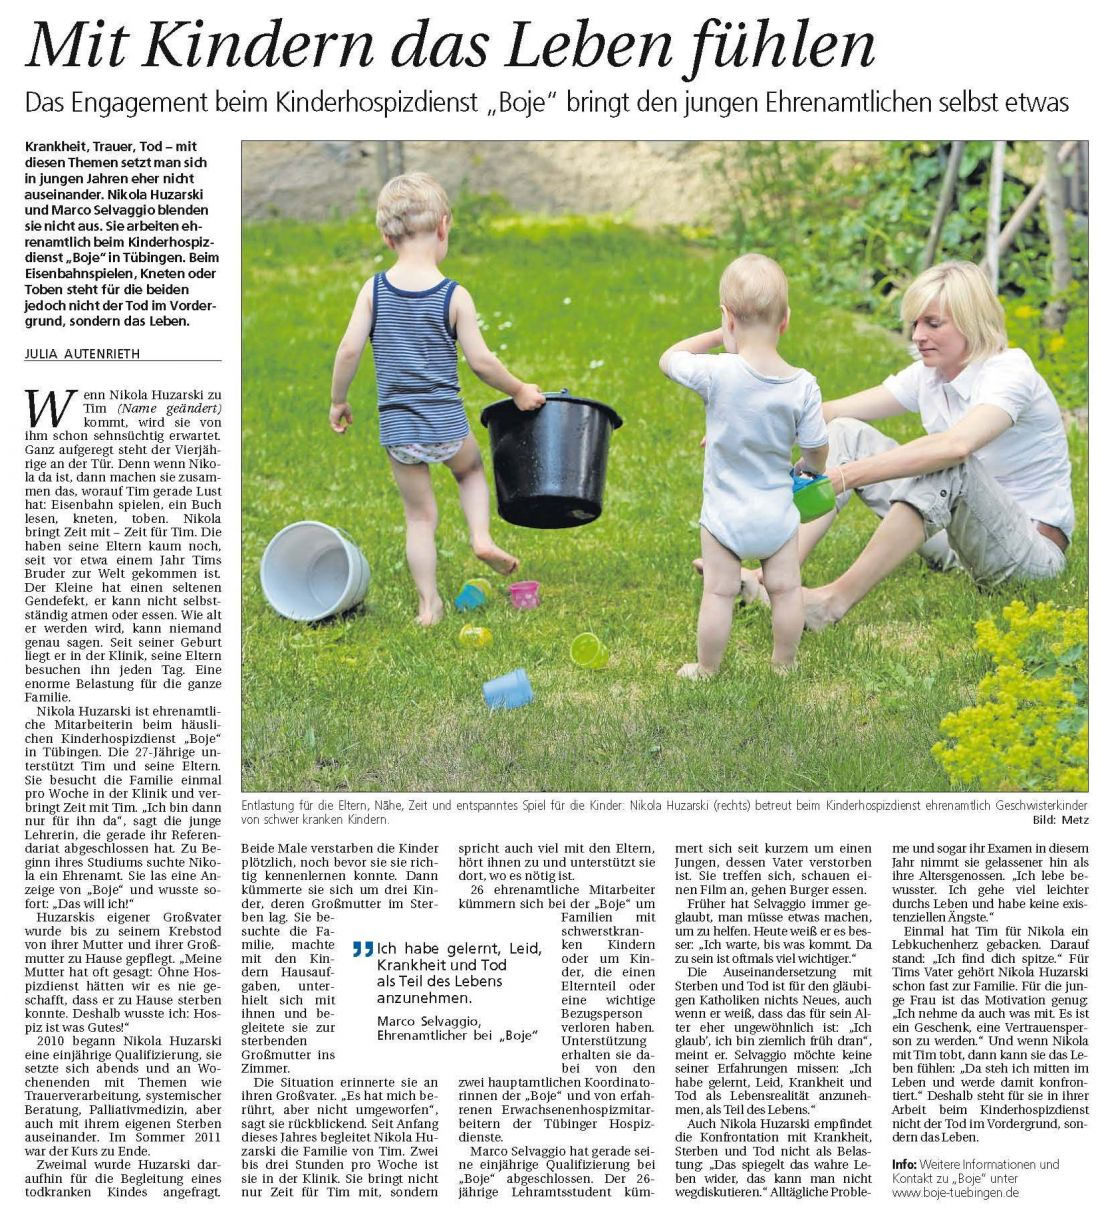 Bericht im Schwäbischen Tagblatt (11. Juli 2013) zur Arbeit von Ehrenamtlichen